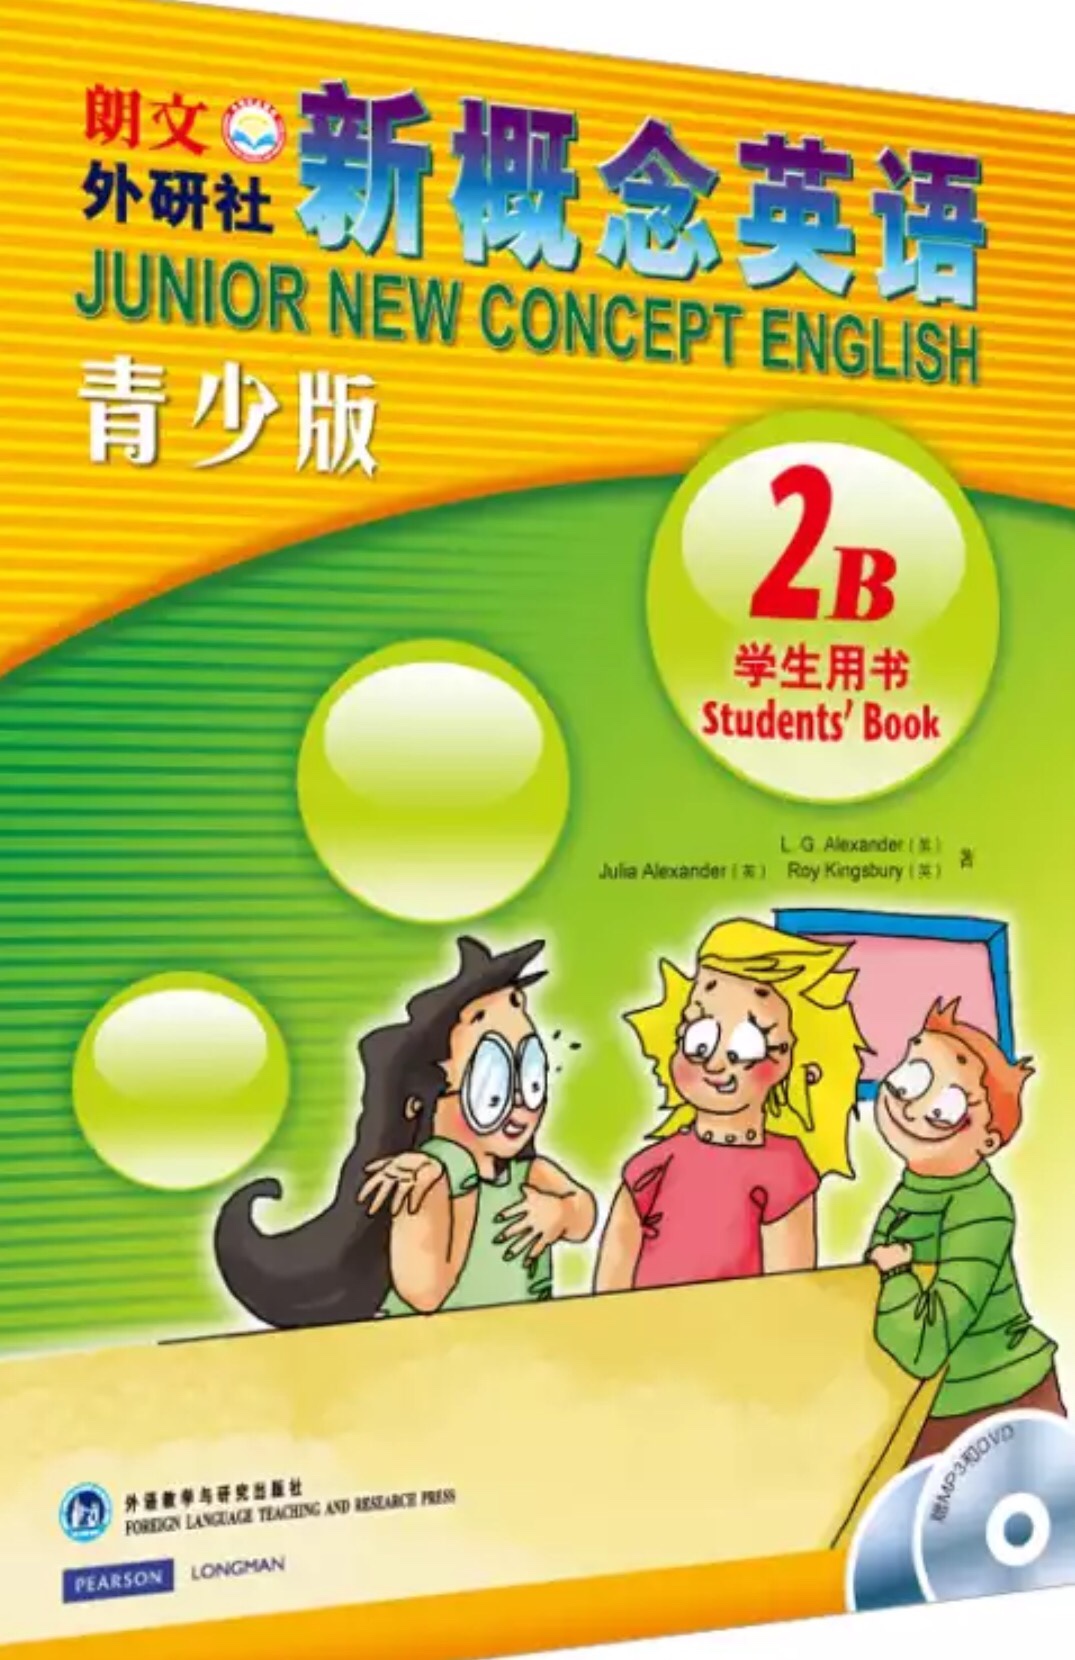 新概念英语青少版书适合小学生用